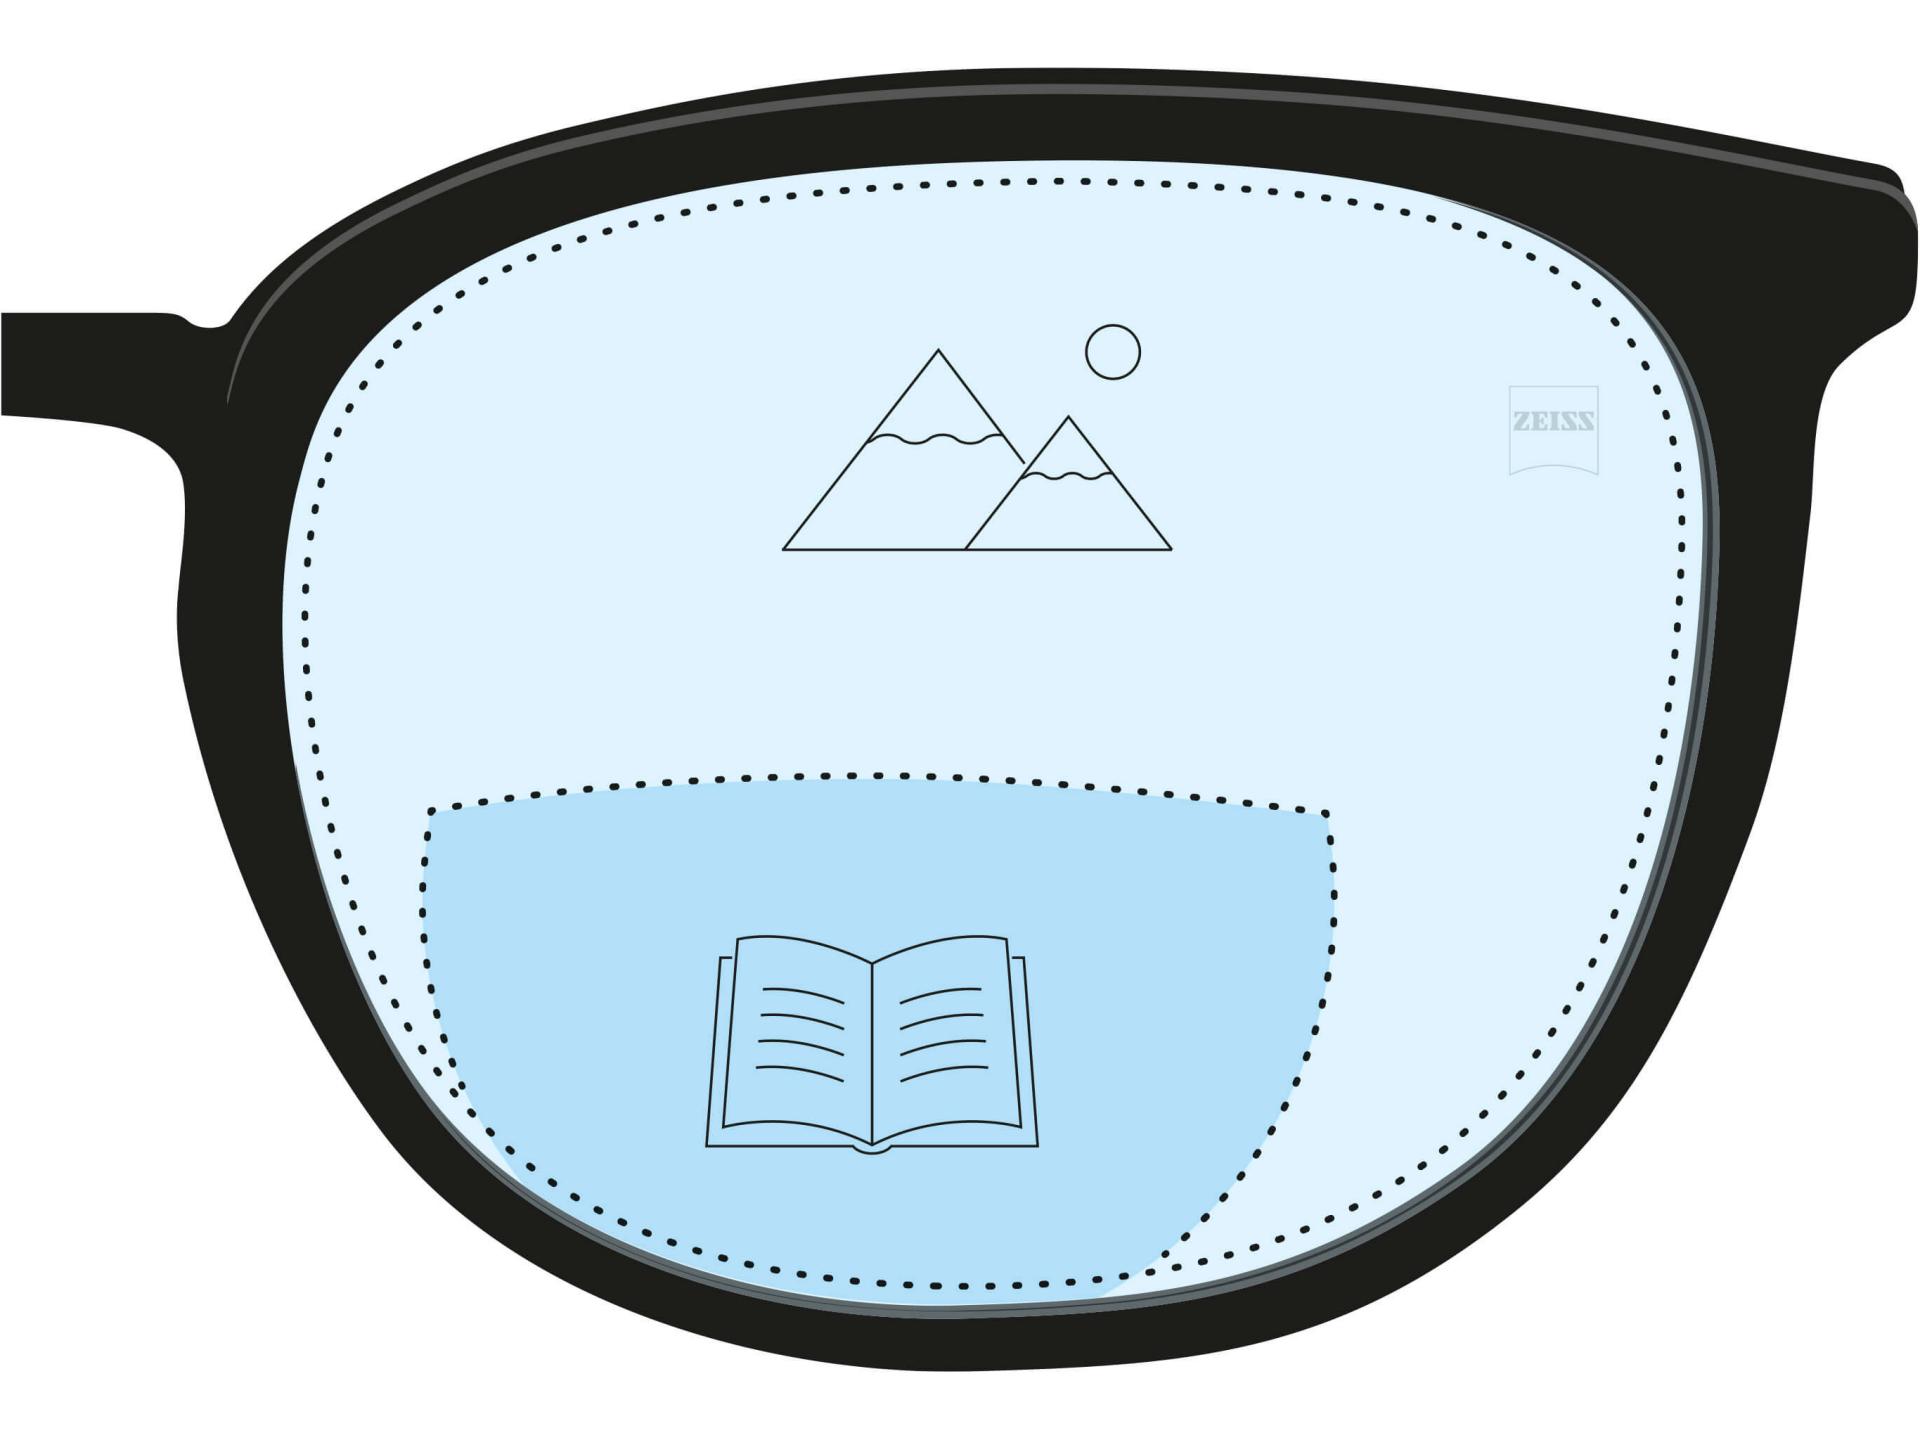 En illustrasjon av et bifokalt glass. Et mørkeblått område indikerte lesesonen mens en lyseblå del av glasset angir avstandssonen.